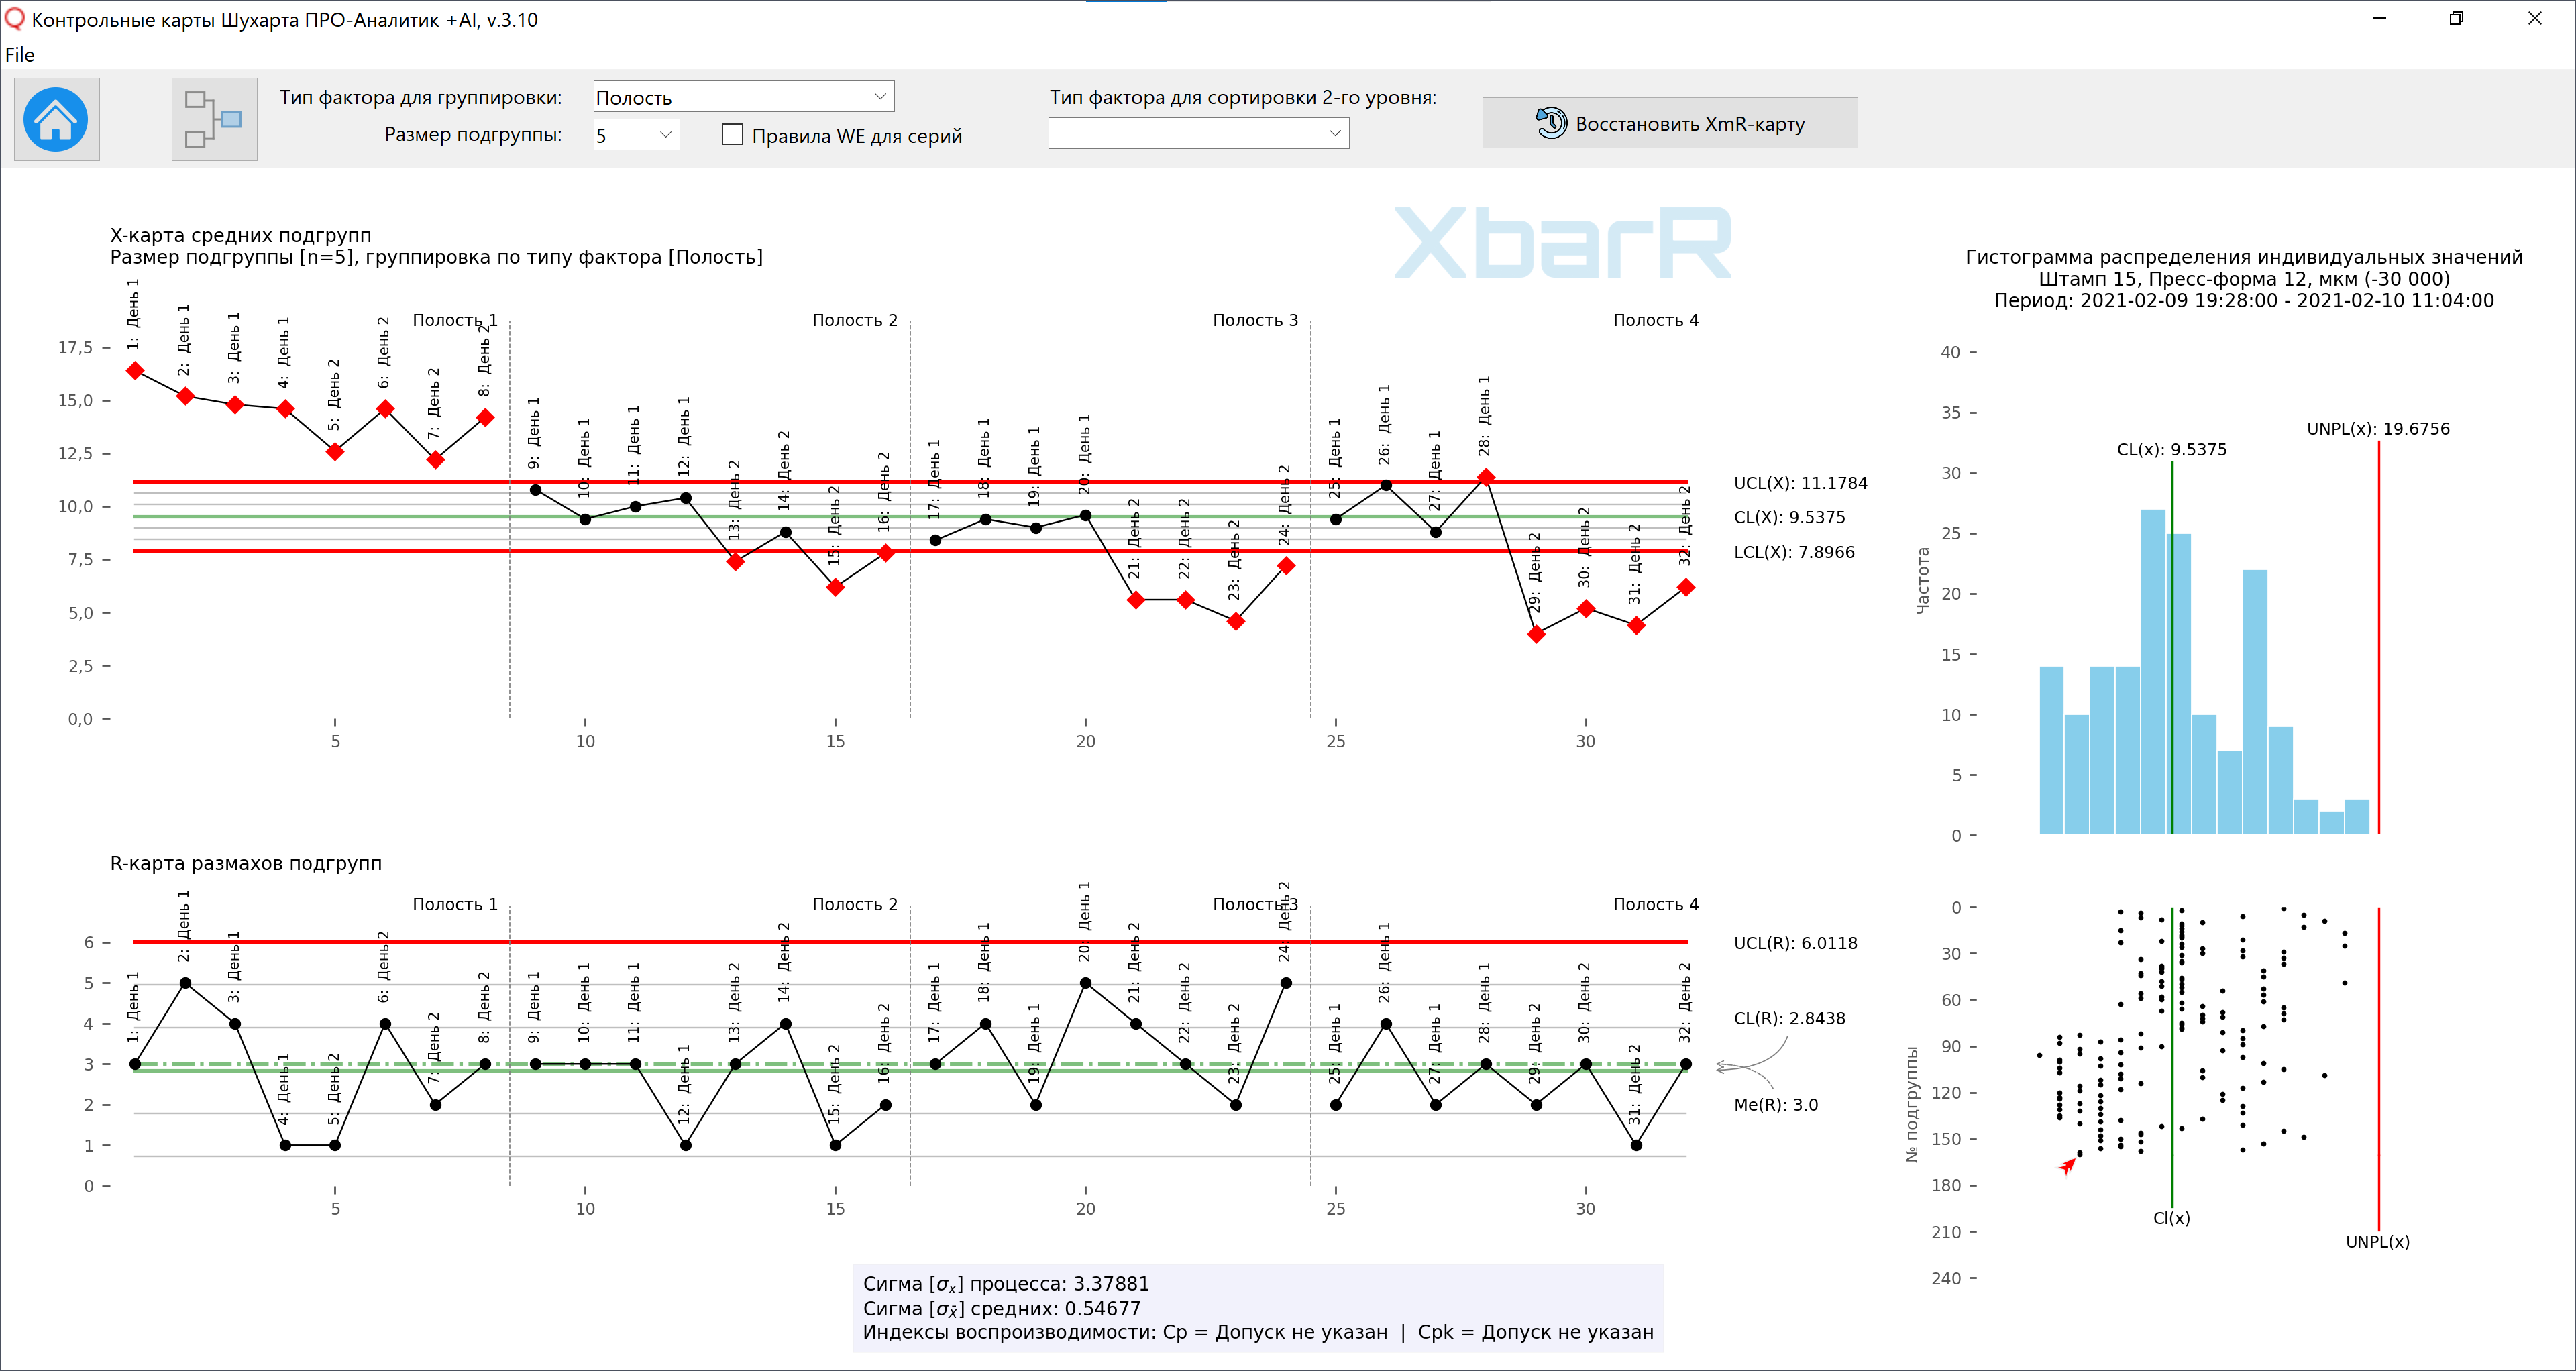 Панель управления графиками контрольной XbarR-карты средних, гистограммой, точечным графиком с указанием состояния вкл./выкл. функции ПО.